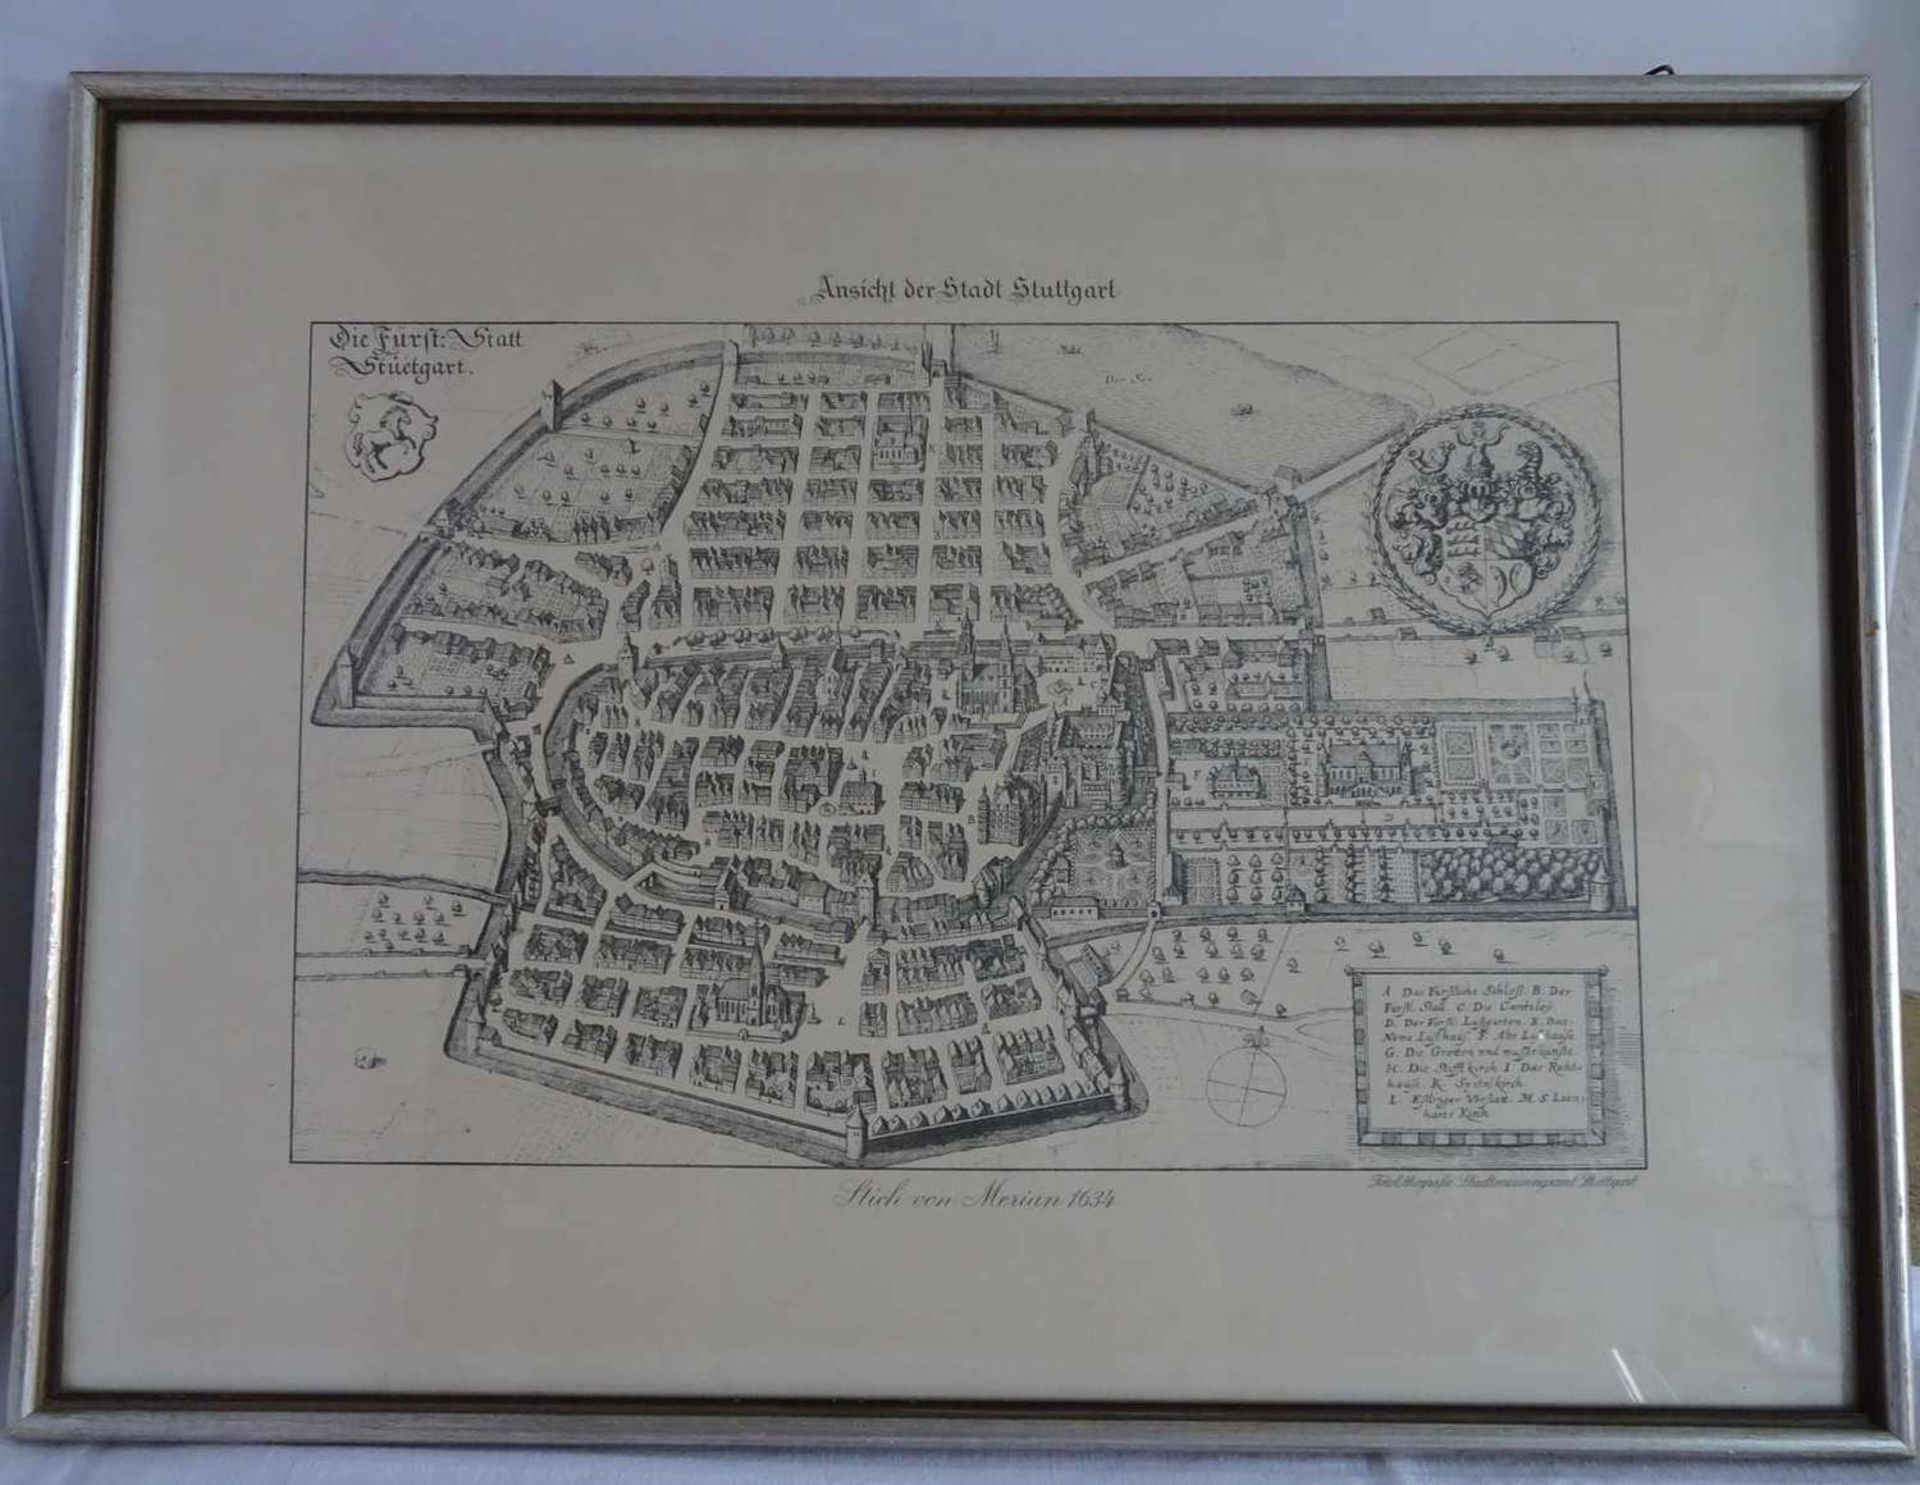 Ansicht der Stadt Stuttgart - Stich nach Merian 1634. Fotolithografie Stadtmessungsamt Stuttgart.